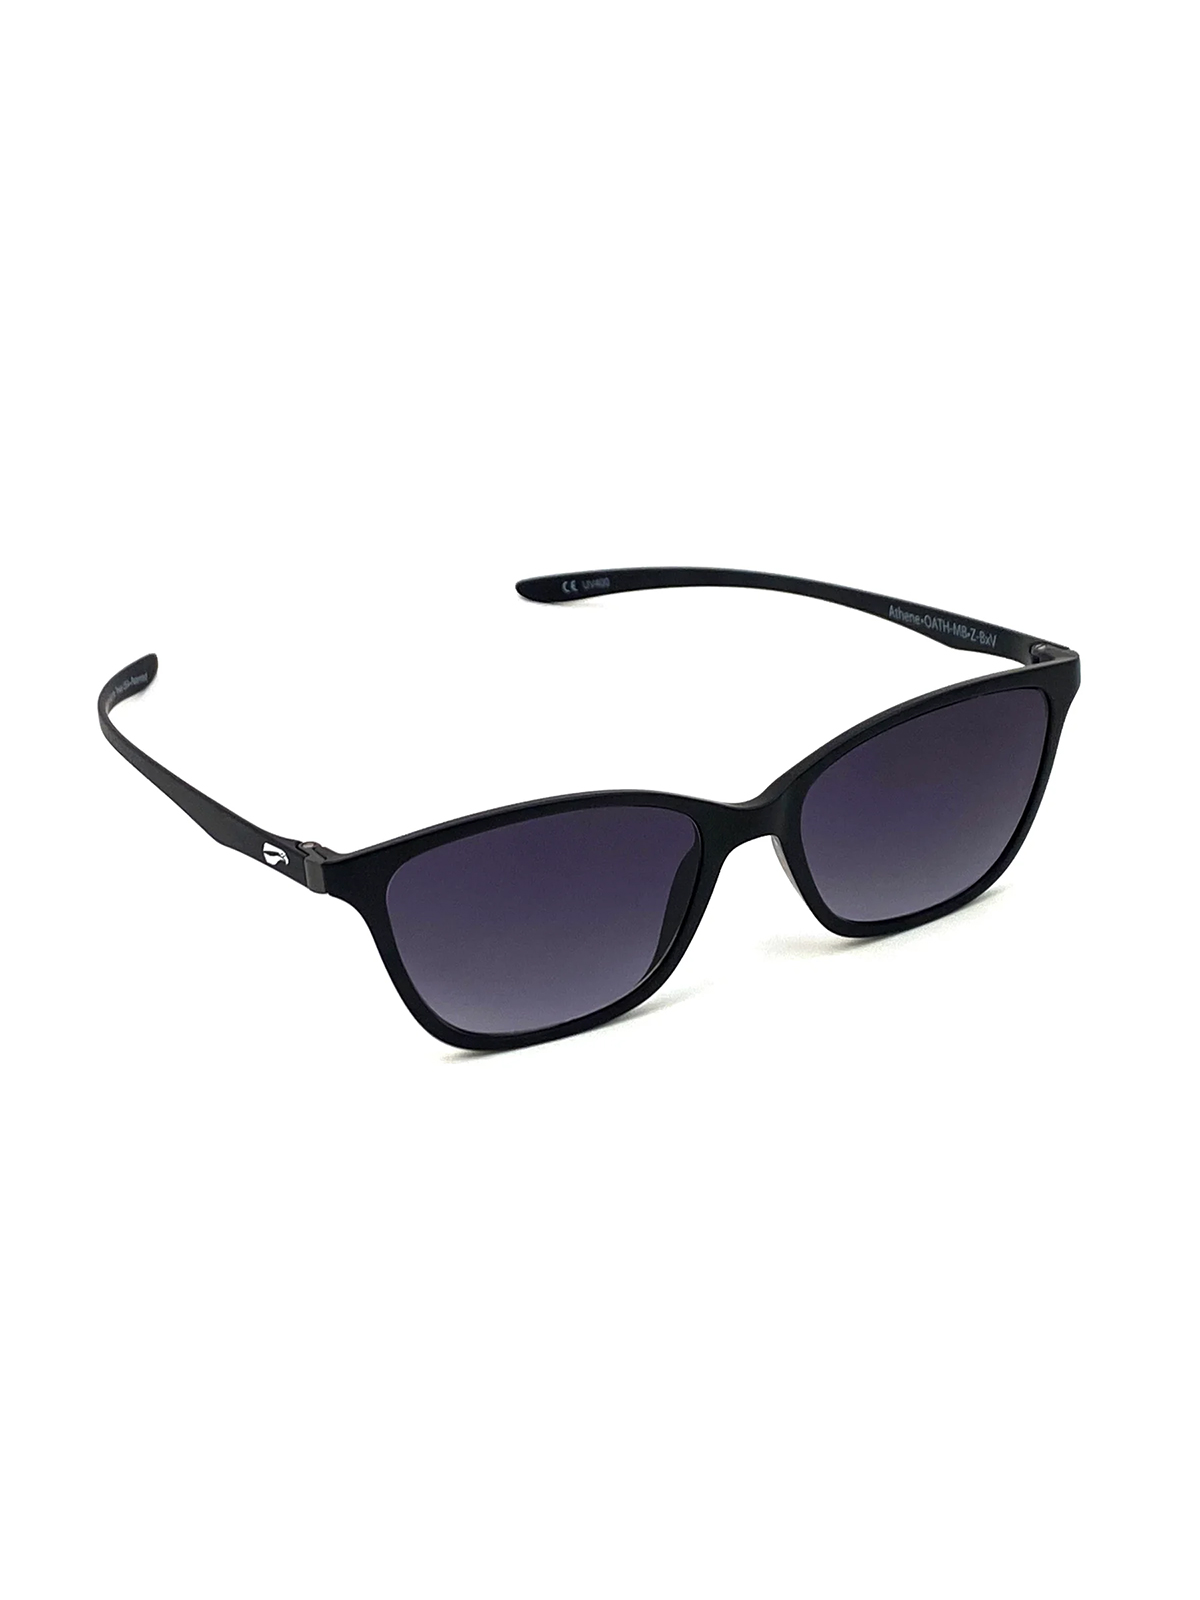 Flying Eyes Sonnenbrille Athene - Rahmen matt schwarz, Linsen grau (Verlauf)